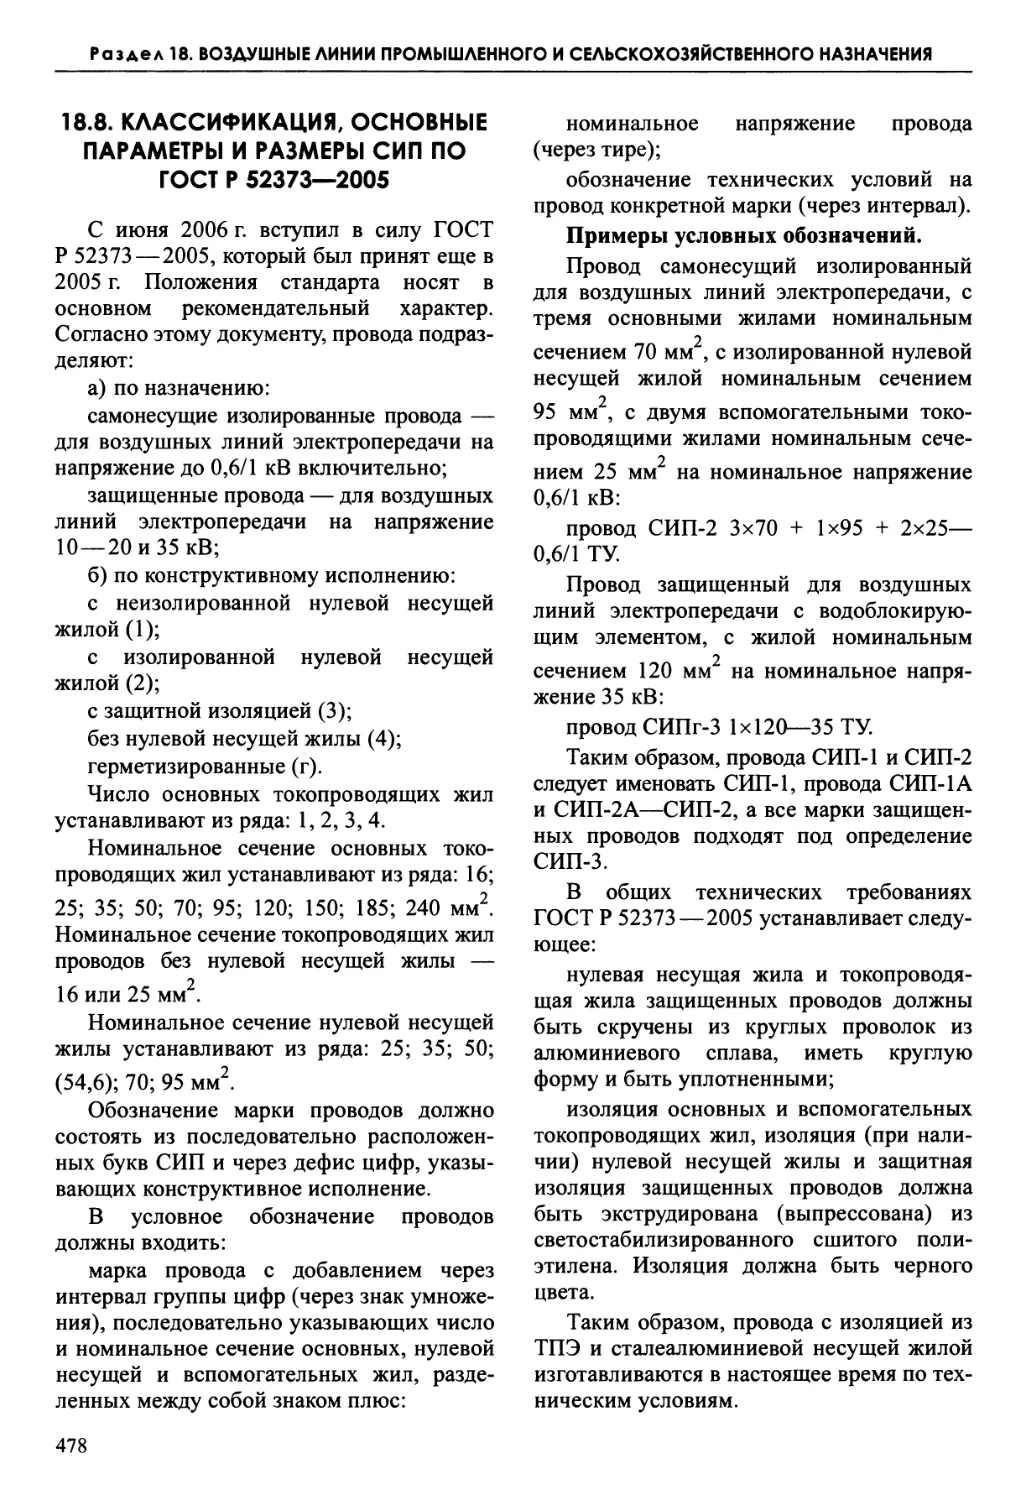 18.8. Классификация, основные параметры и размеры СИП по ГОСТ Р 52373—2005